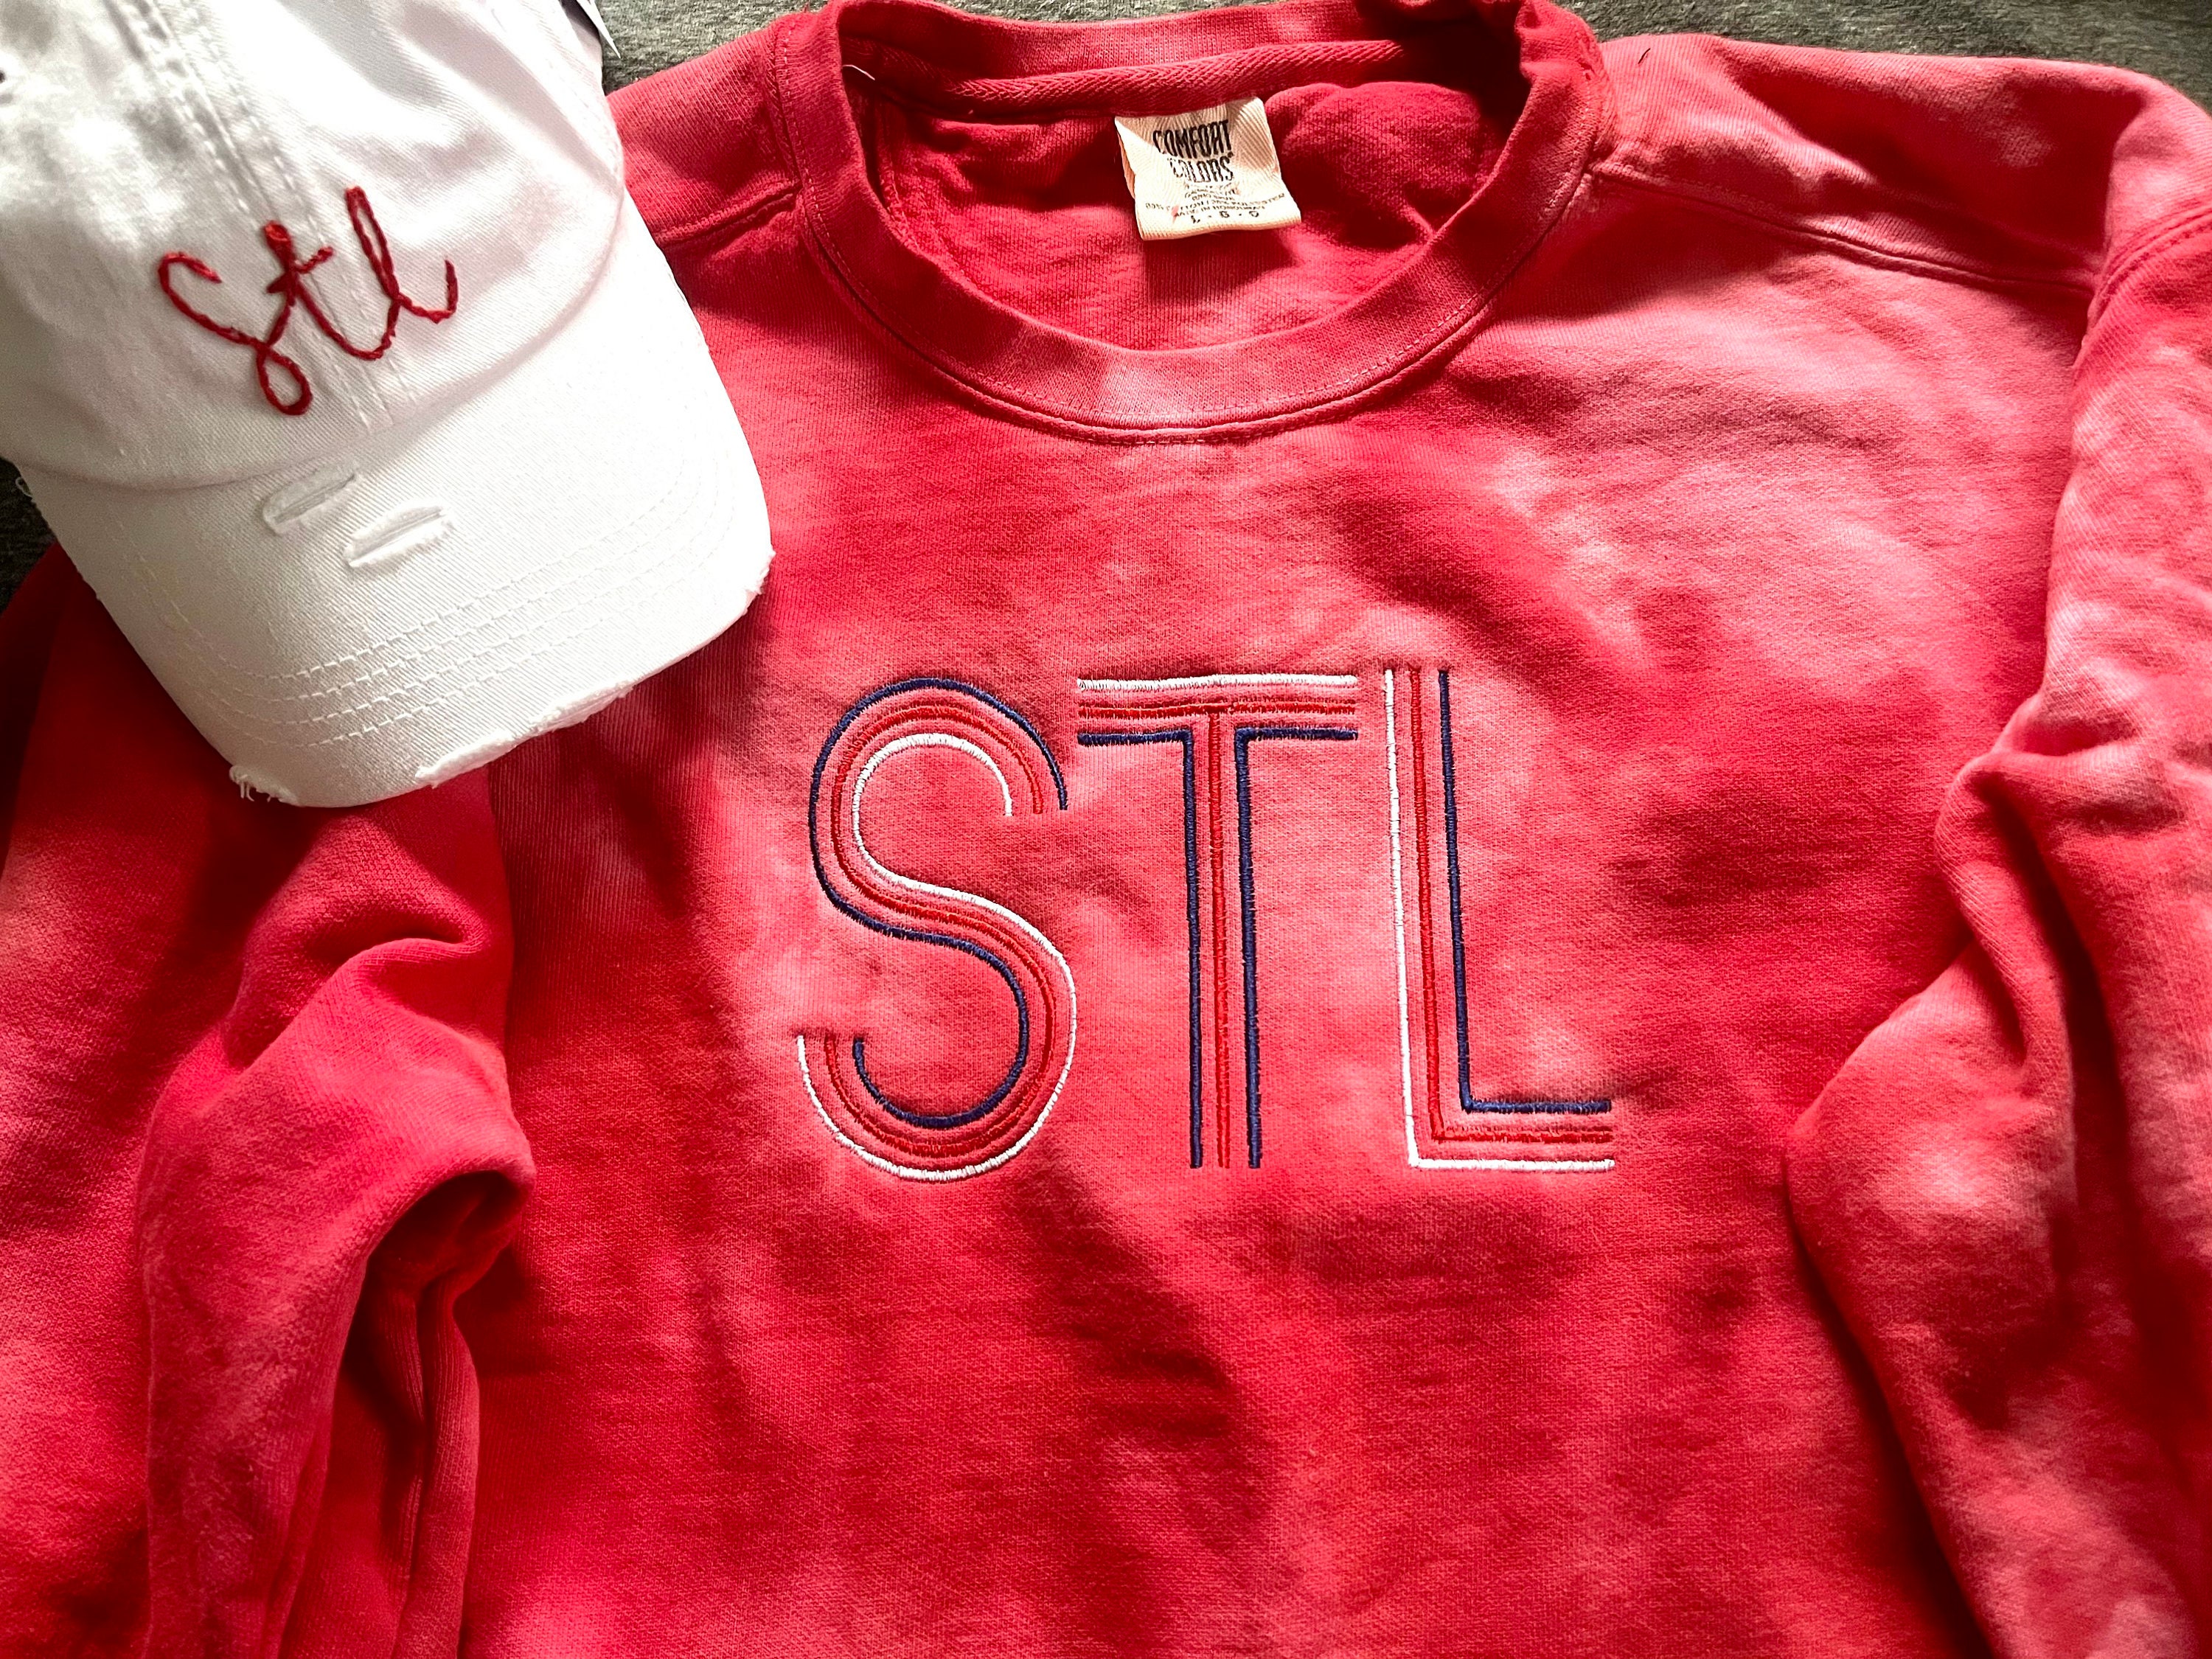 St. Louis Cardinals Spiral Tie Dye Ladies T-Shirt – Sunshine Daydream